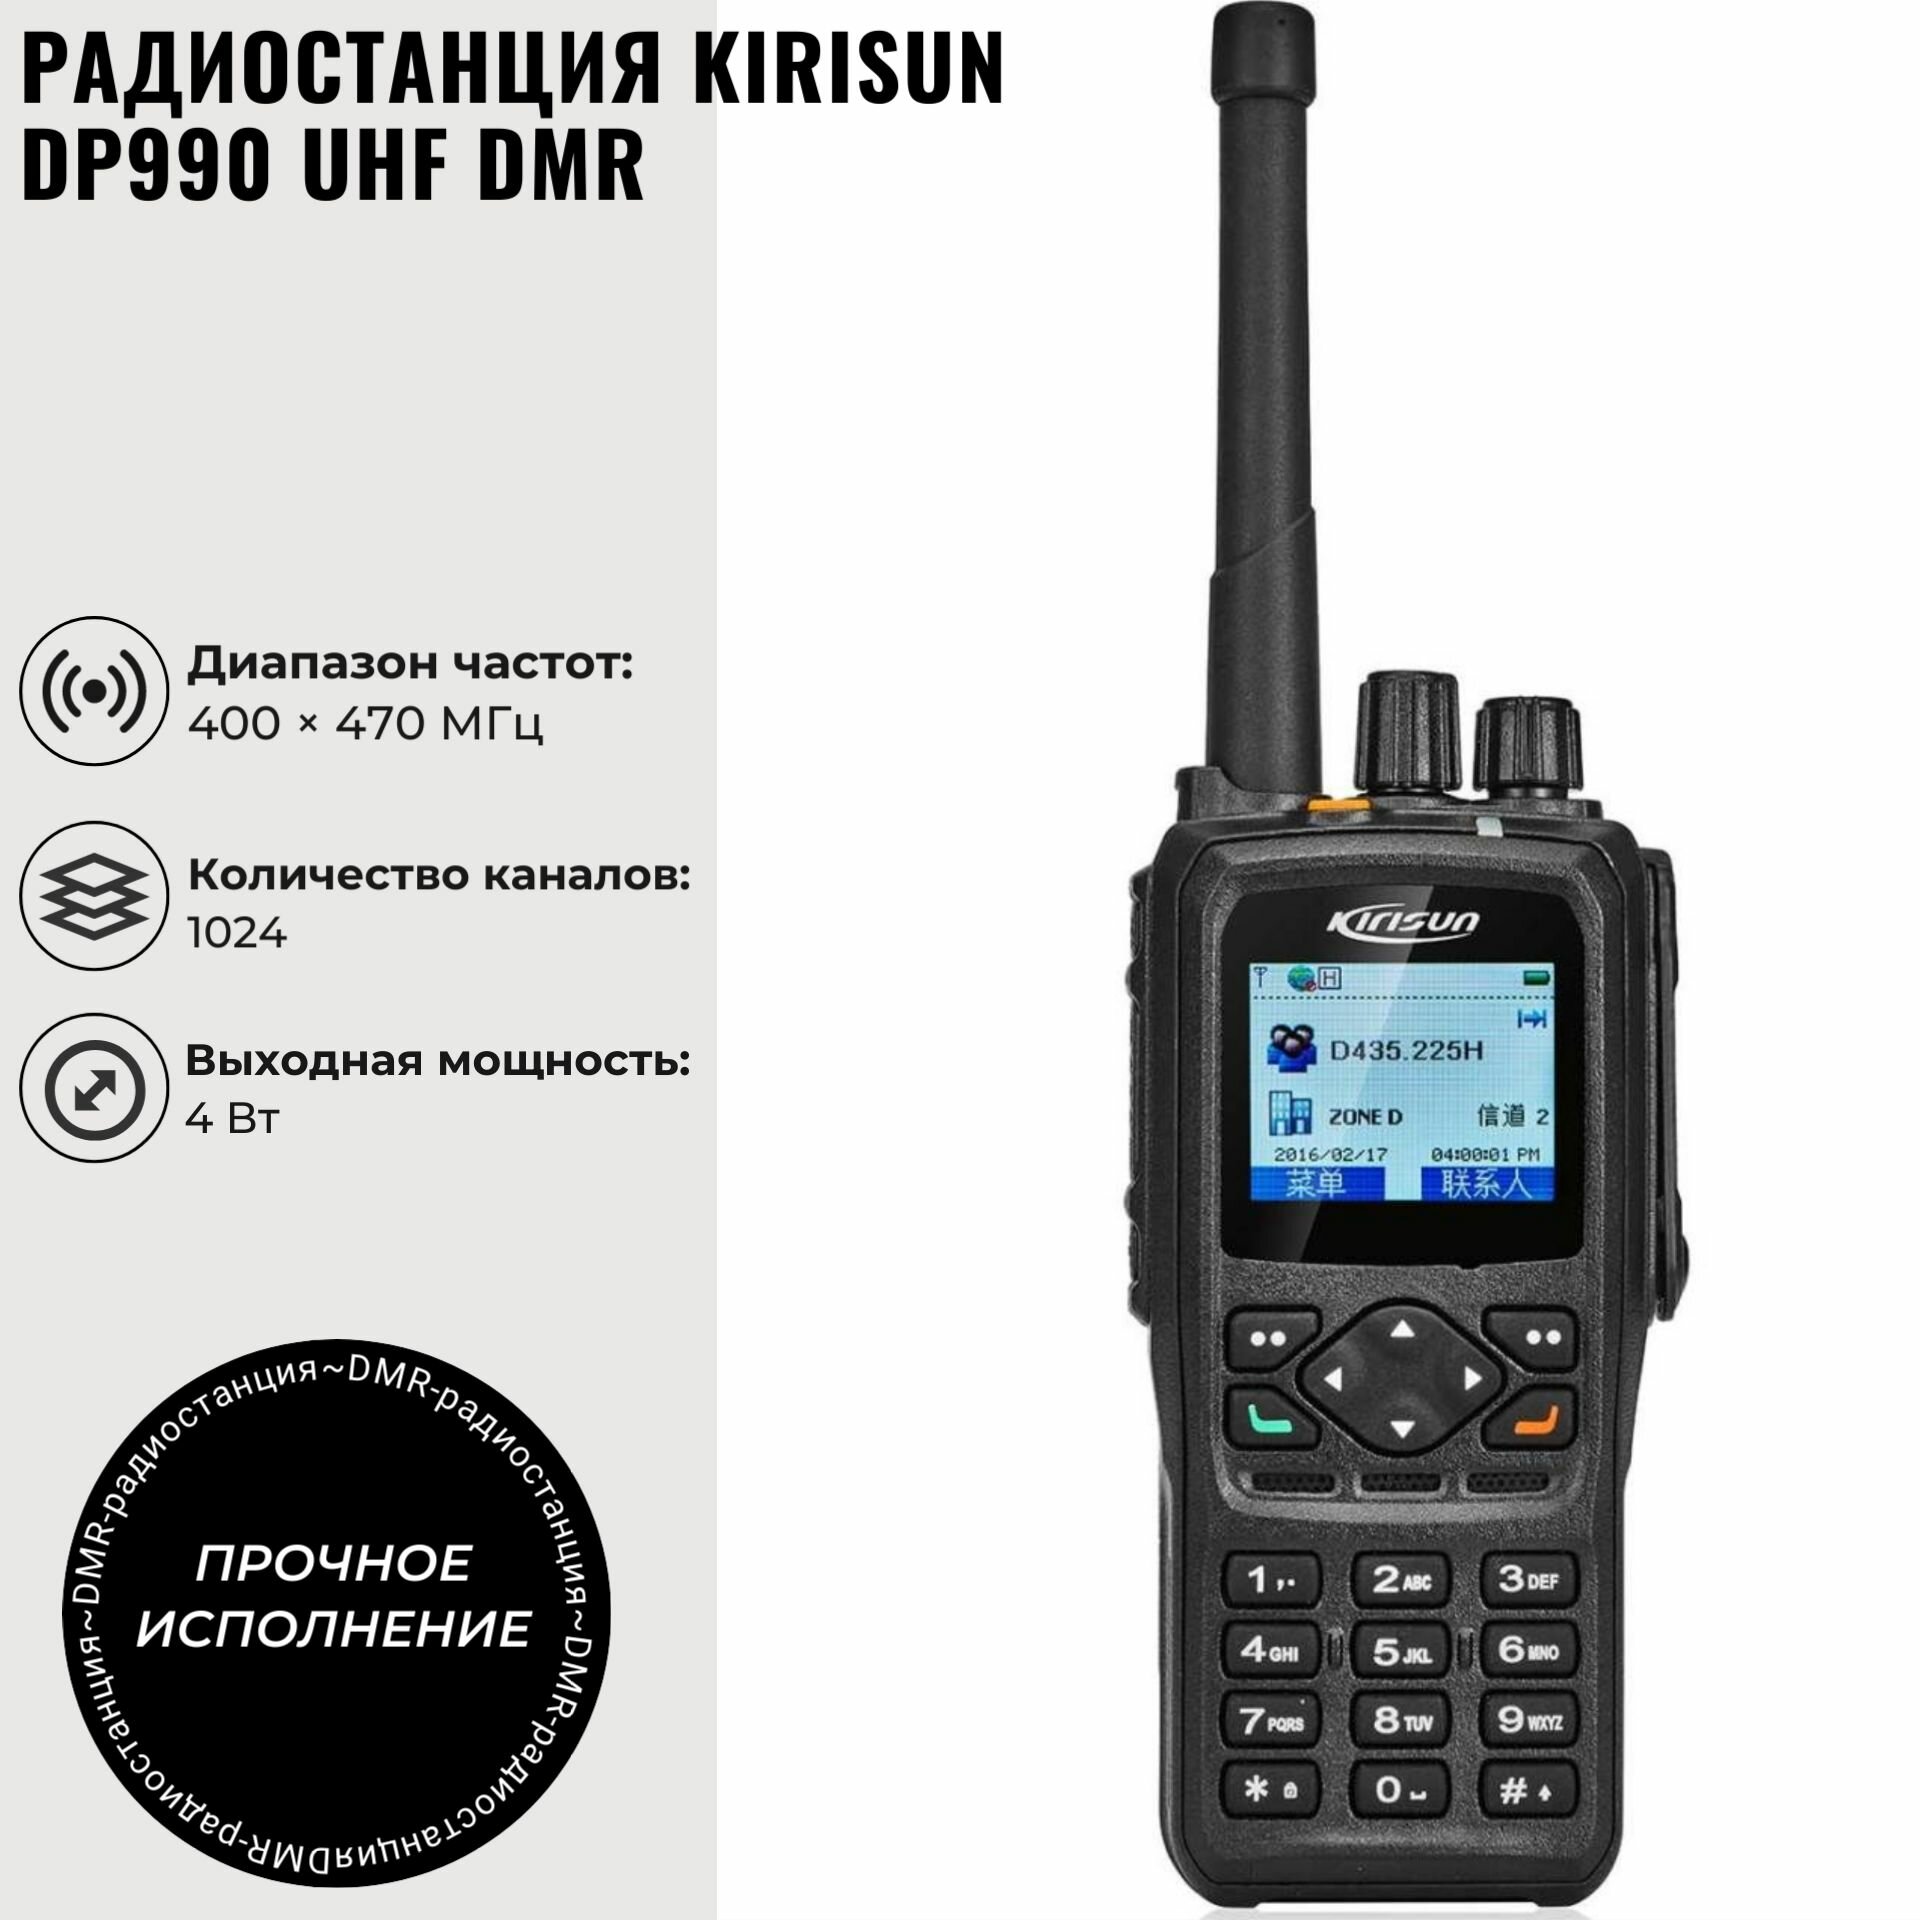 Радиостанция портативная Kirisun DP990 UHF DMR